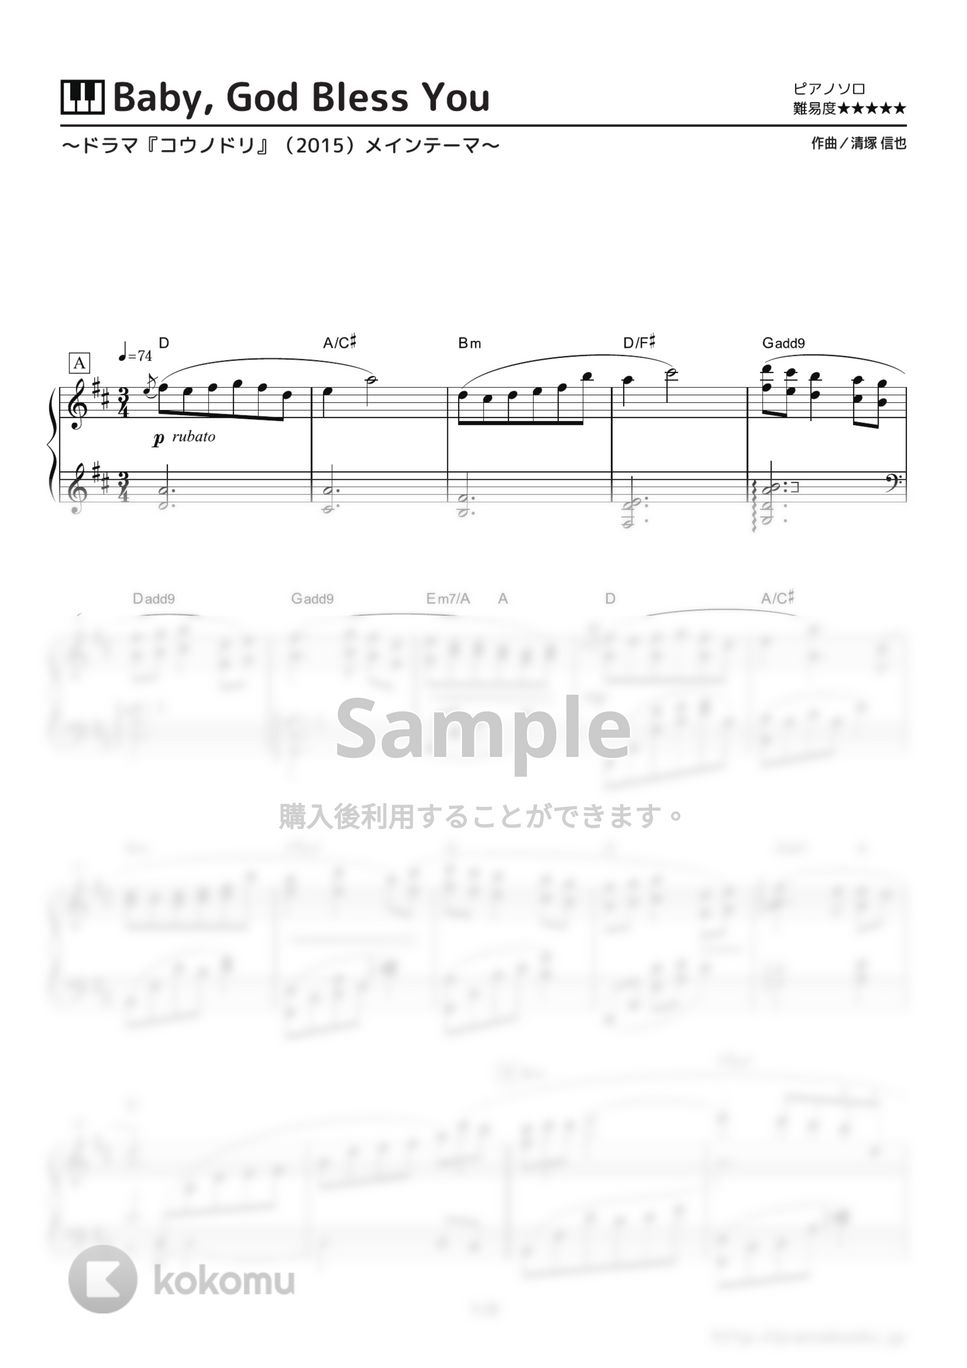 清塚信也 - Baby, God Bless You (ドラマ『コウノドリ』(2015)メインテーマ) by ピアノの本棚